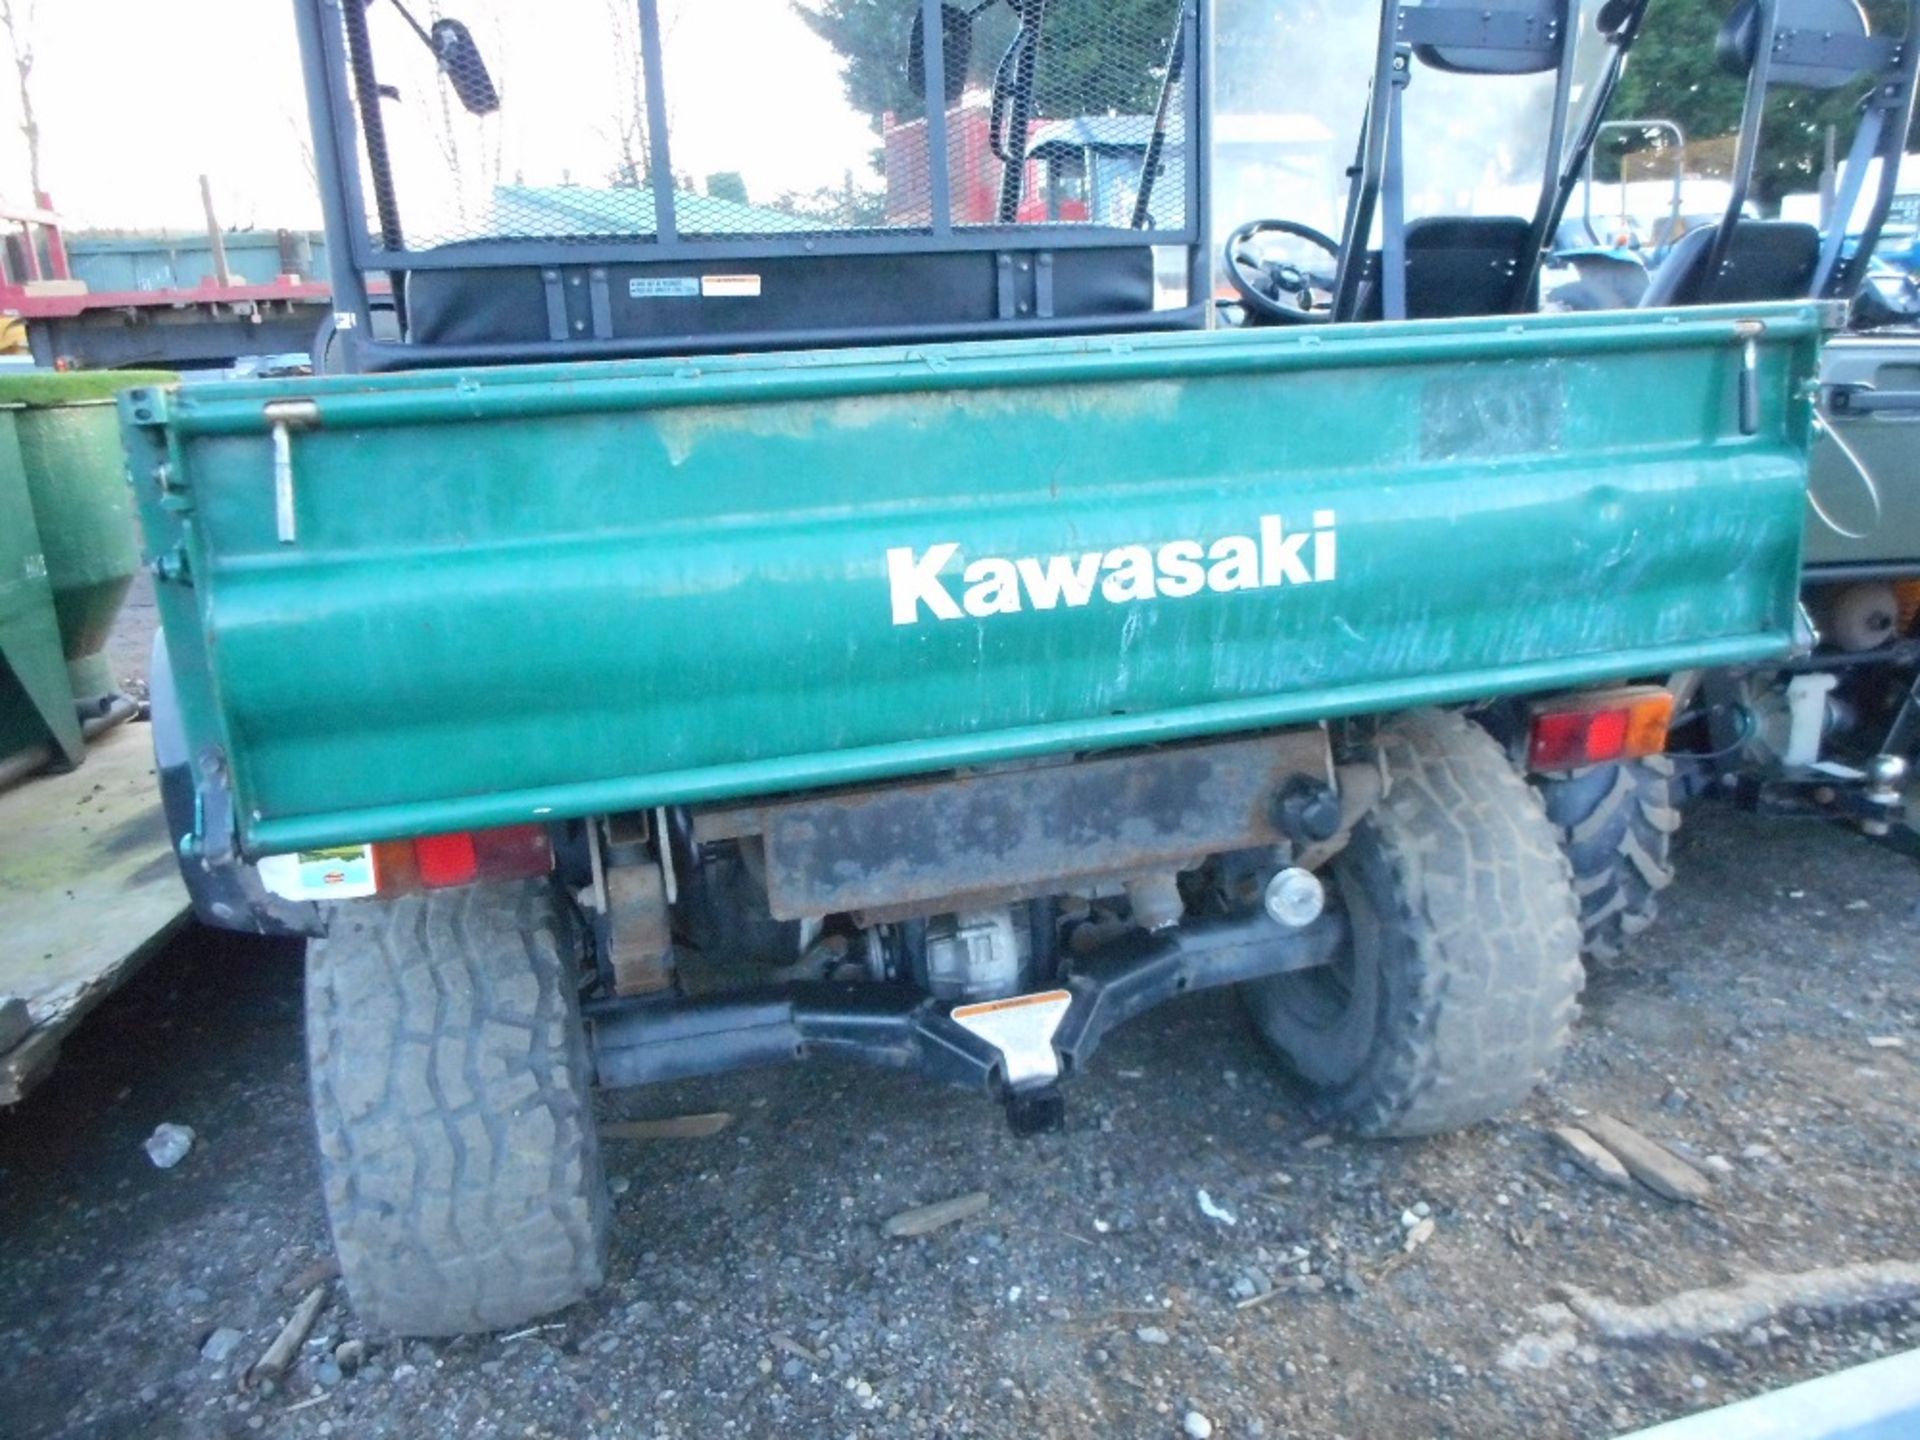 Kawasaki Mule 4010 diesel green yr2009 approx. - Image 5 of 6